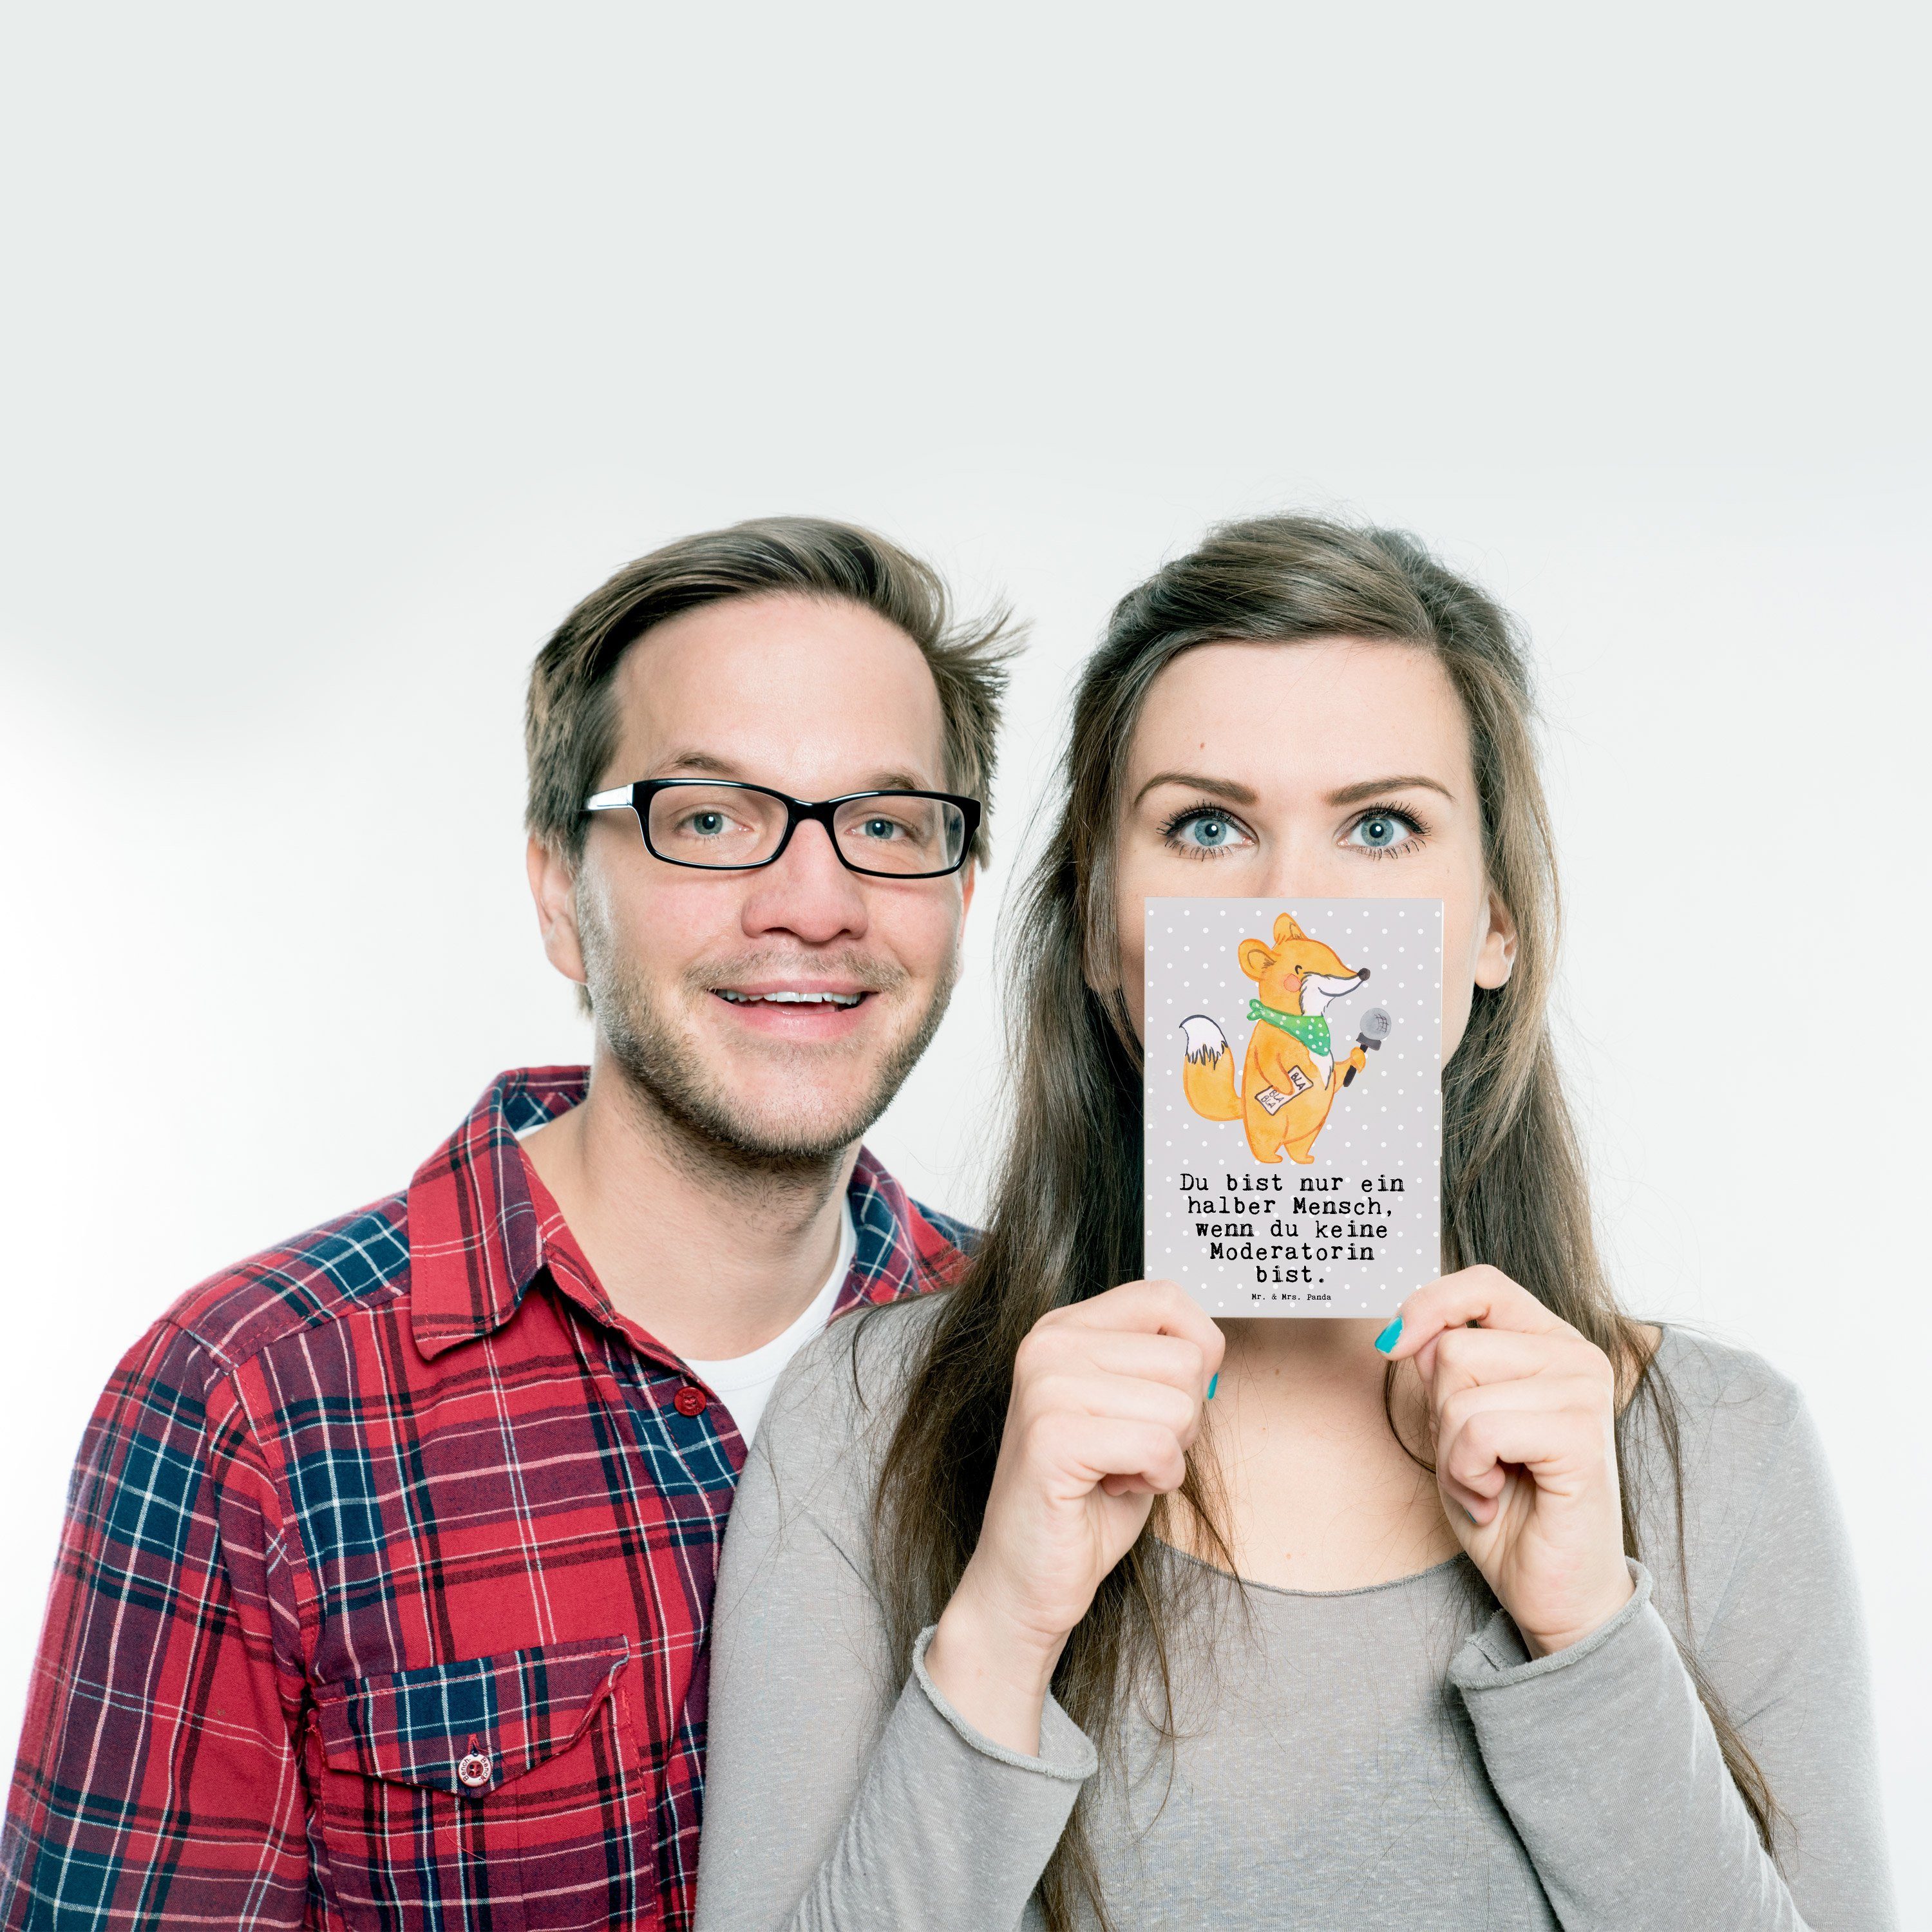 Mrs. Herz & Mr. mit Geschenk, Danke, Postkarte Panda Einladung, - Grau Pastell - Moderatorin Geb